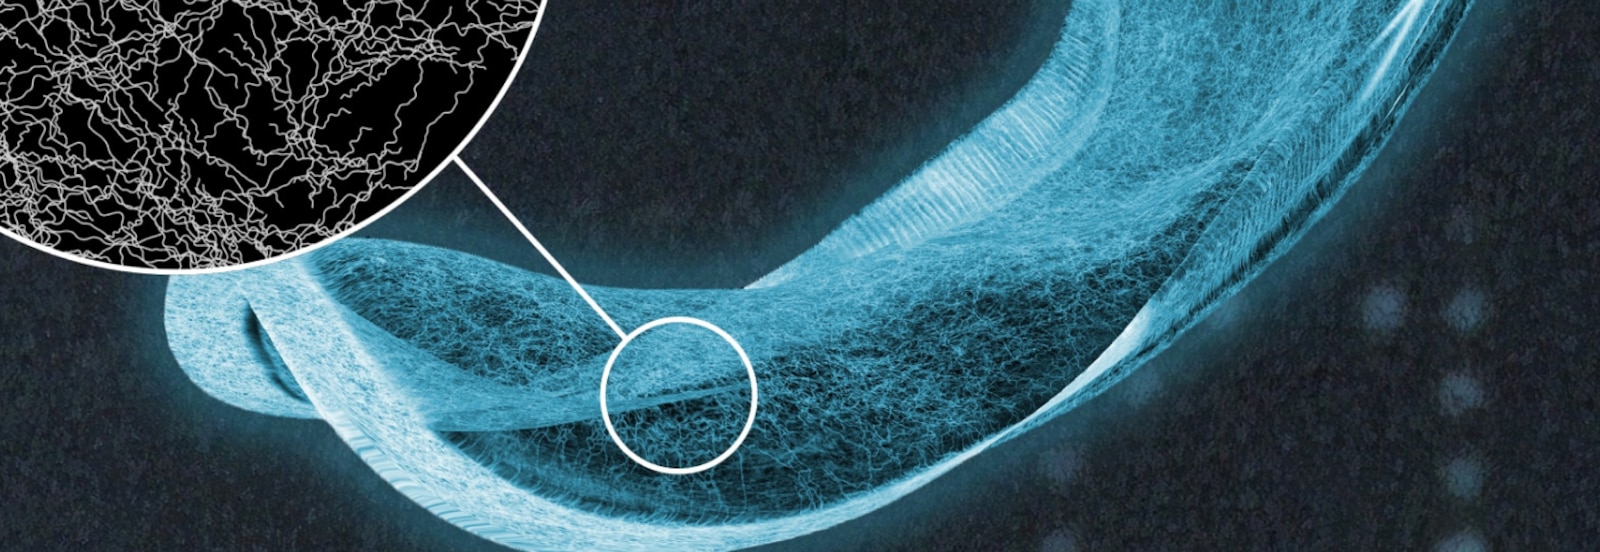 Et røntgenbillede af et absorberende TENA-bind med et detaljeret billede af fibre i den absorberende kerne 